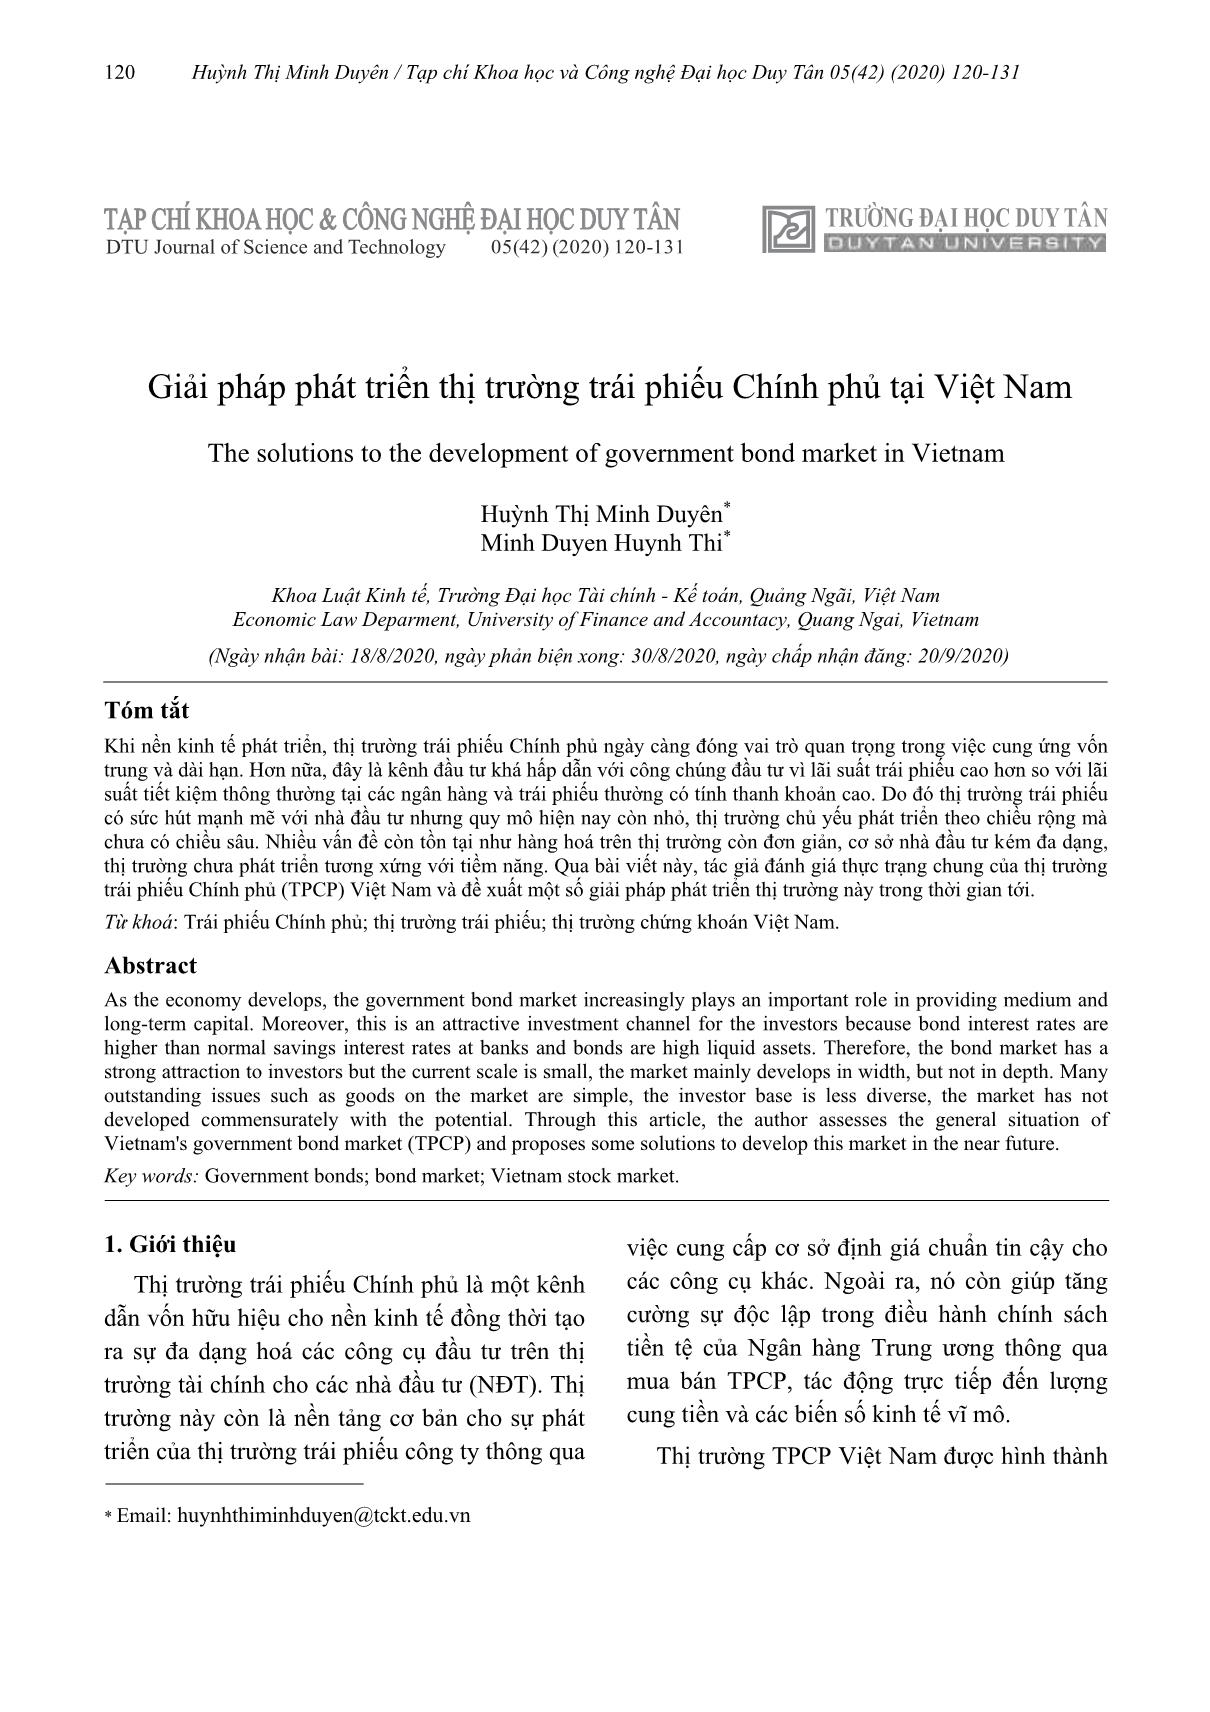 Giải pháp phát triển thị trường trái phiếu Chính phủ tại Việt Nam trang 1